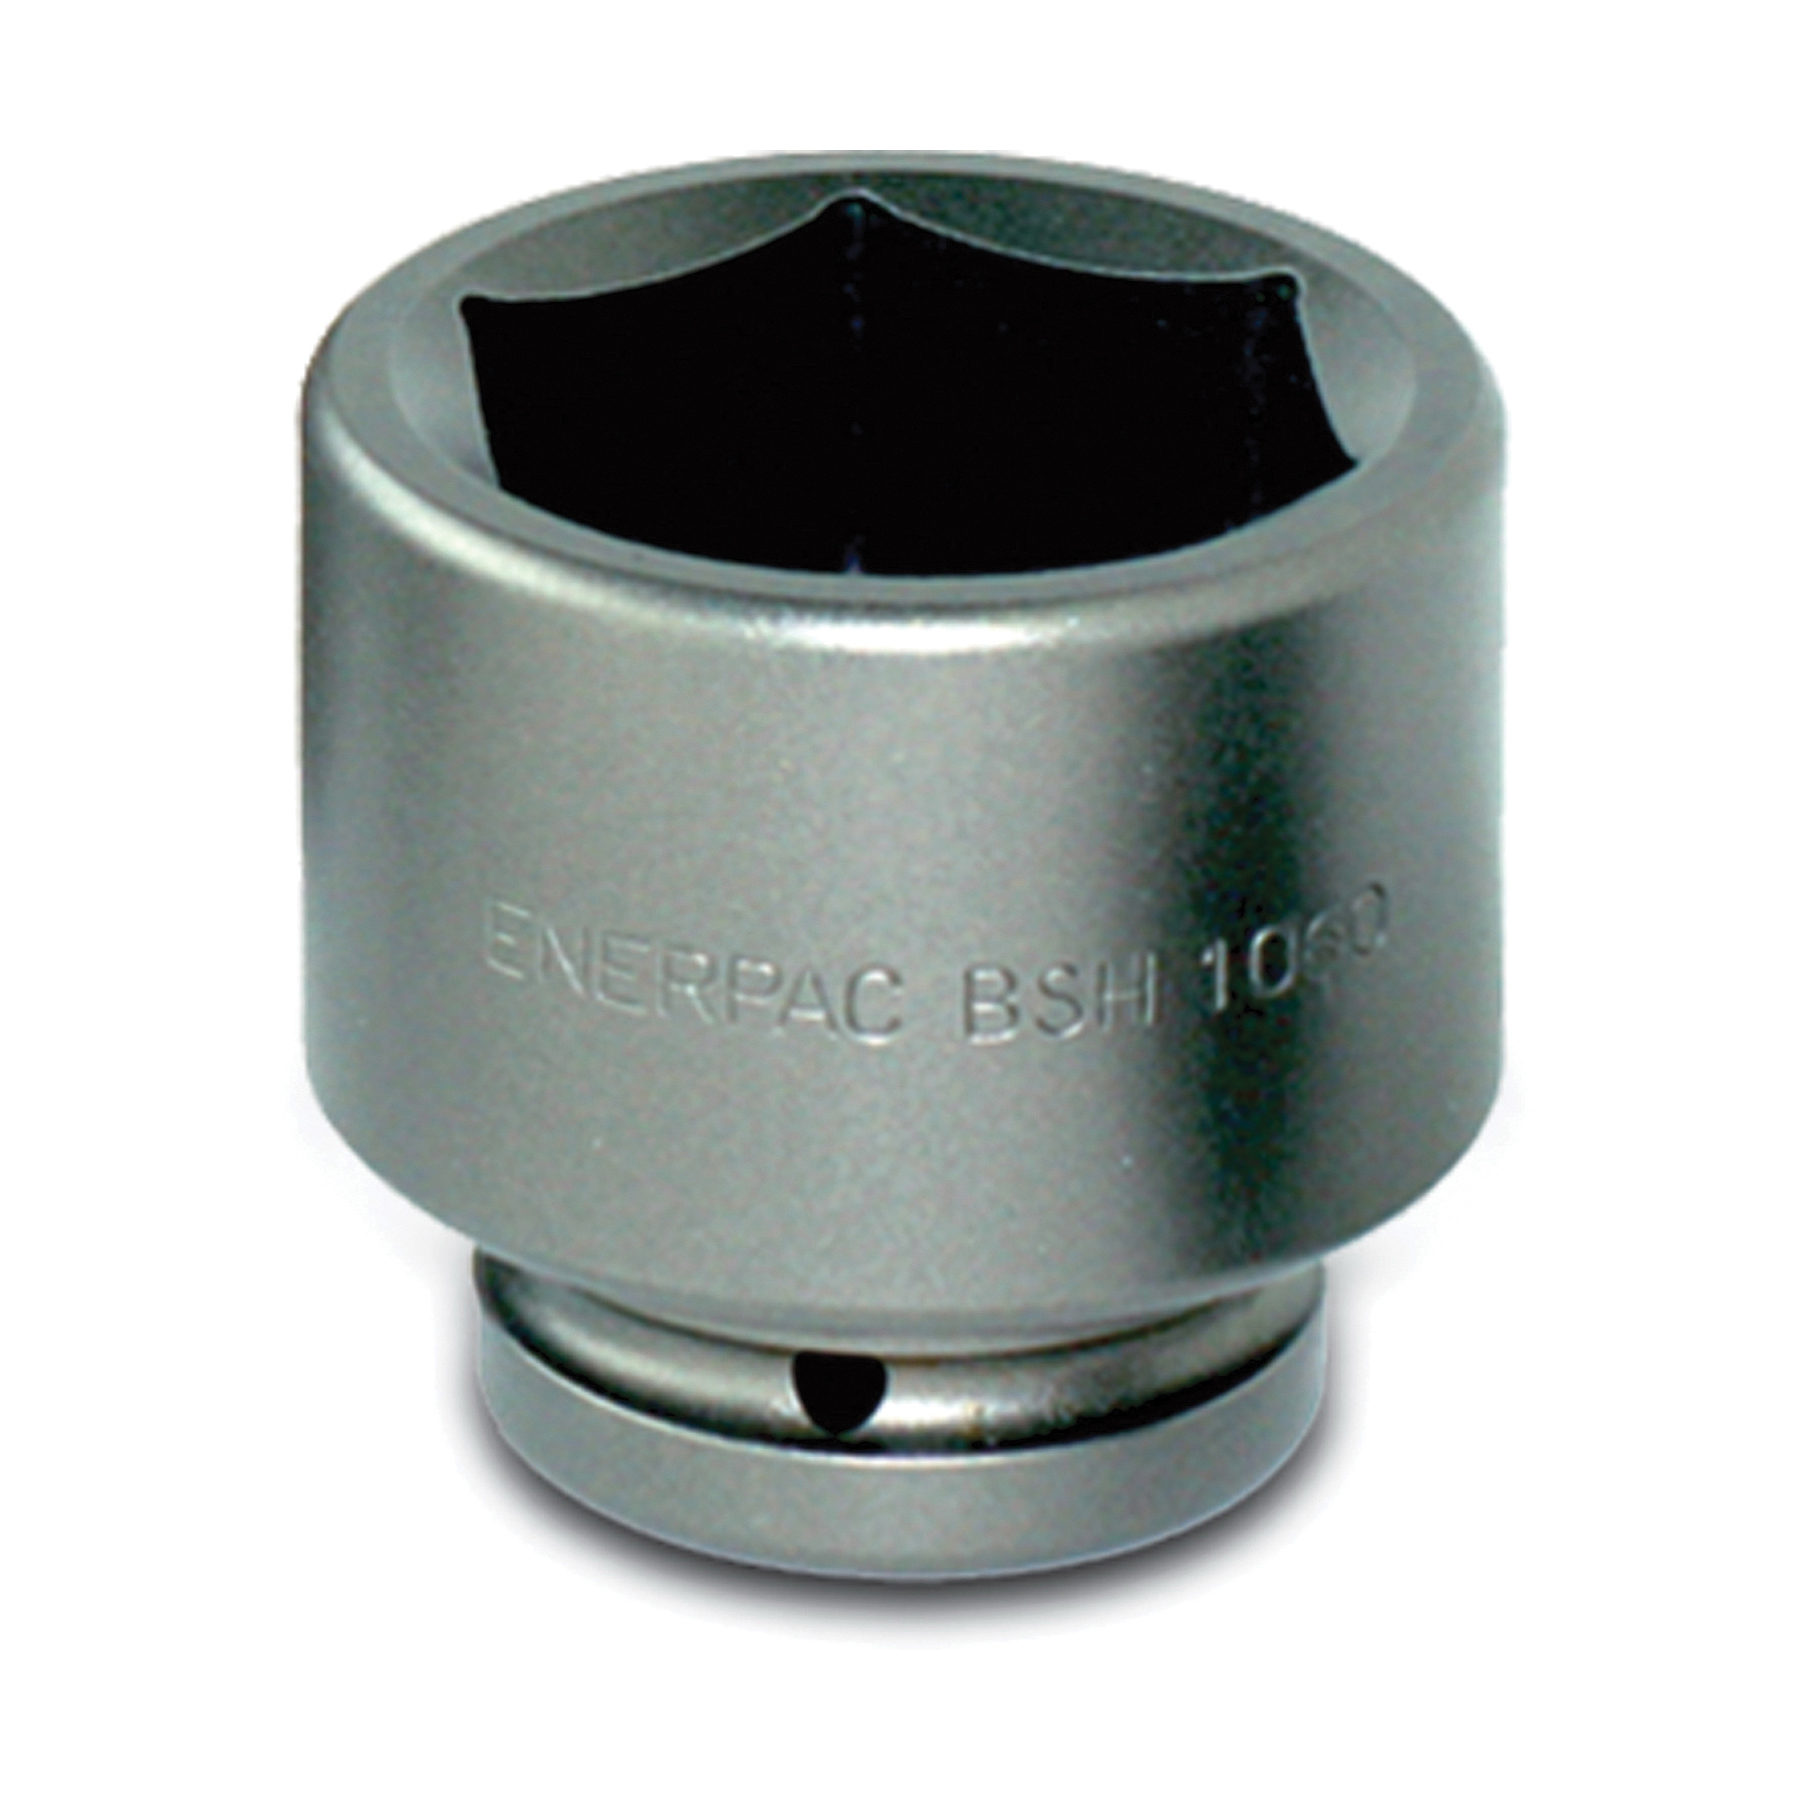 Enerpac® BSH10188 Heavy Duty Standard Socket, 1 in Square Drive, 1-7/8 in Hex Socket, 6-Point